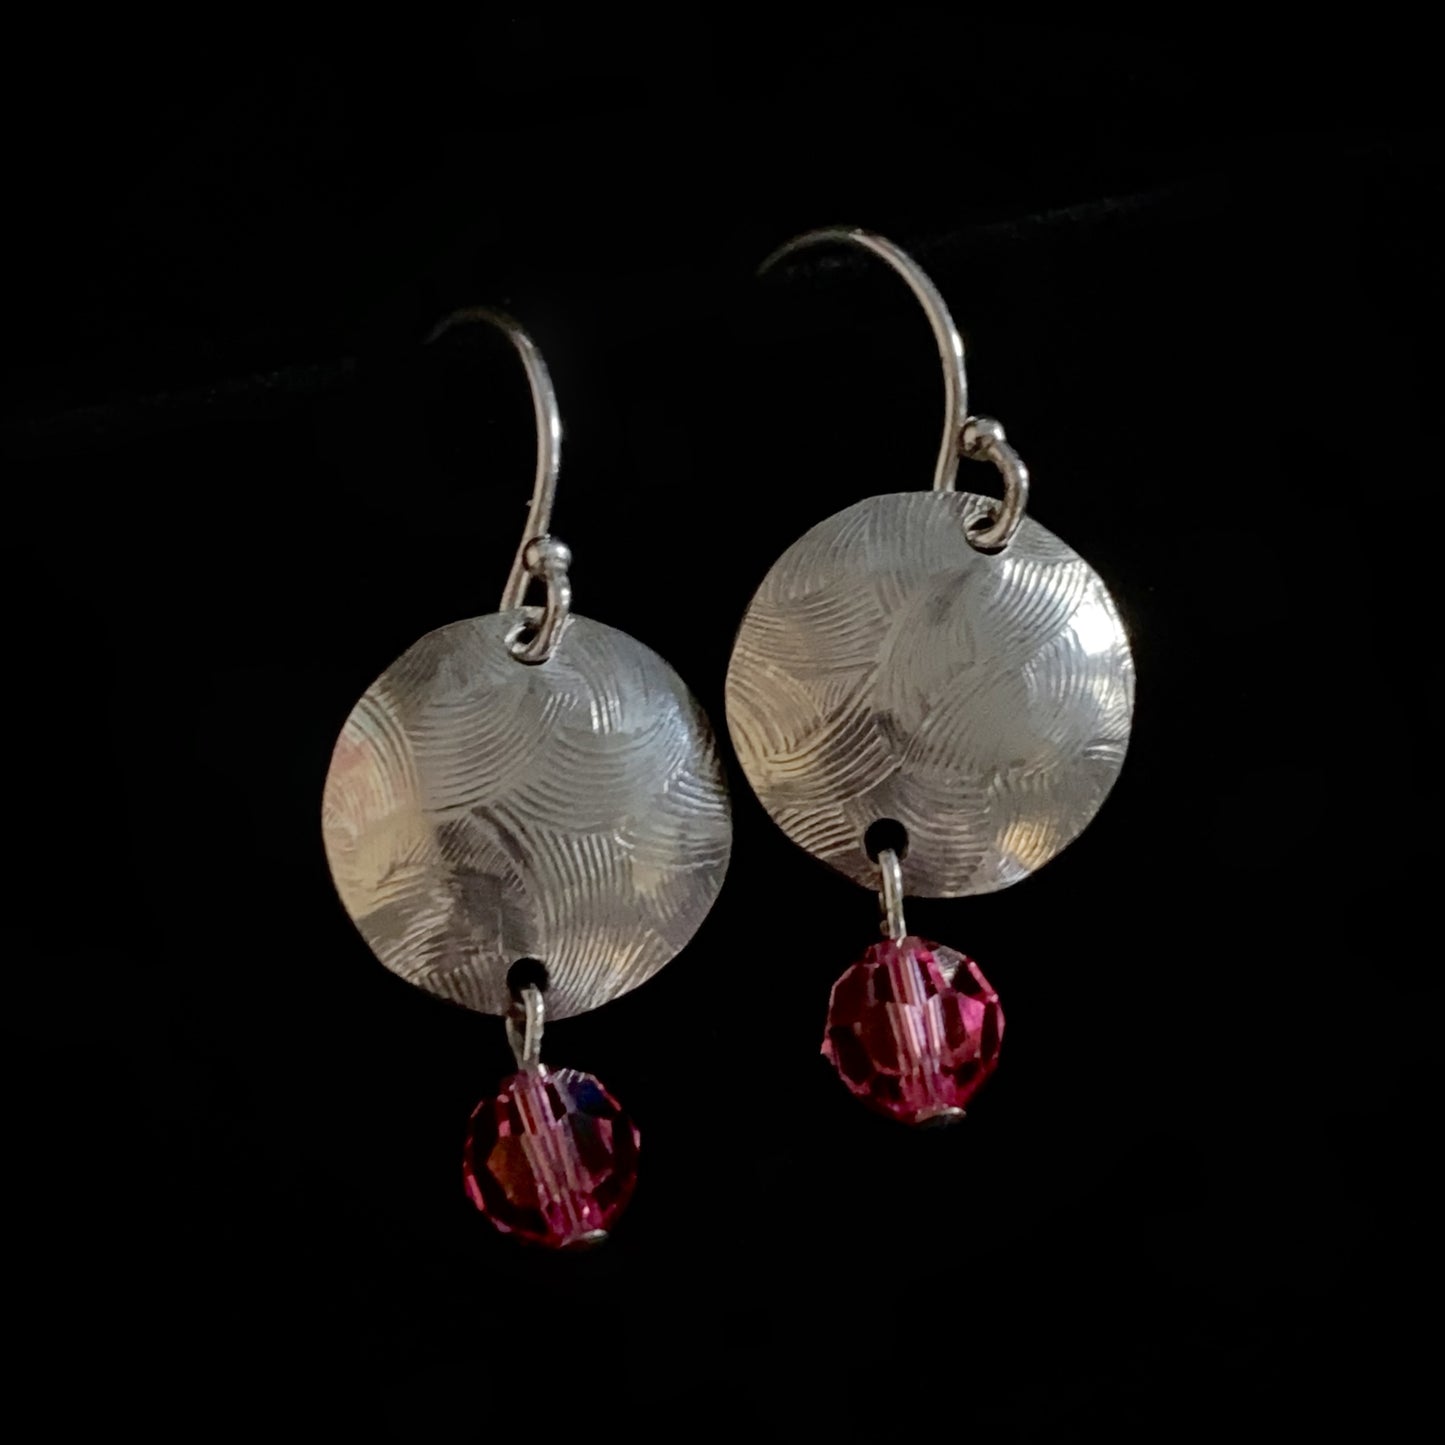 Handmade Swarovski Crystal & Sterling Silver Earrings